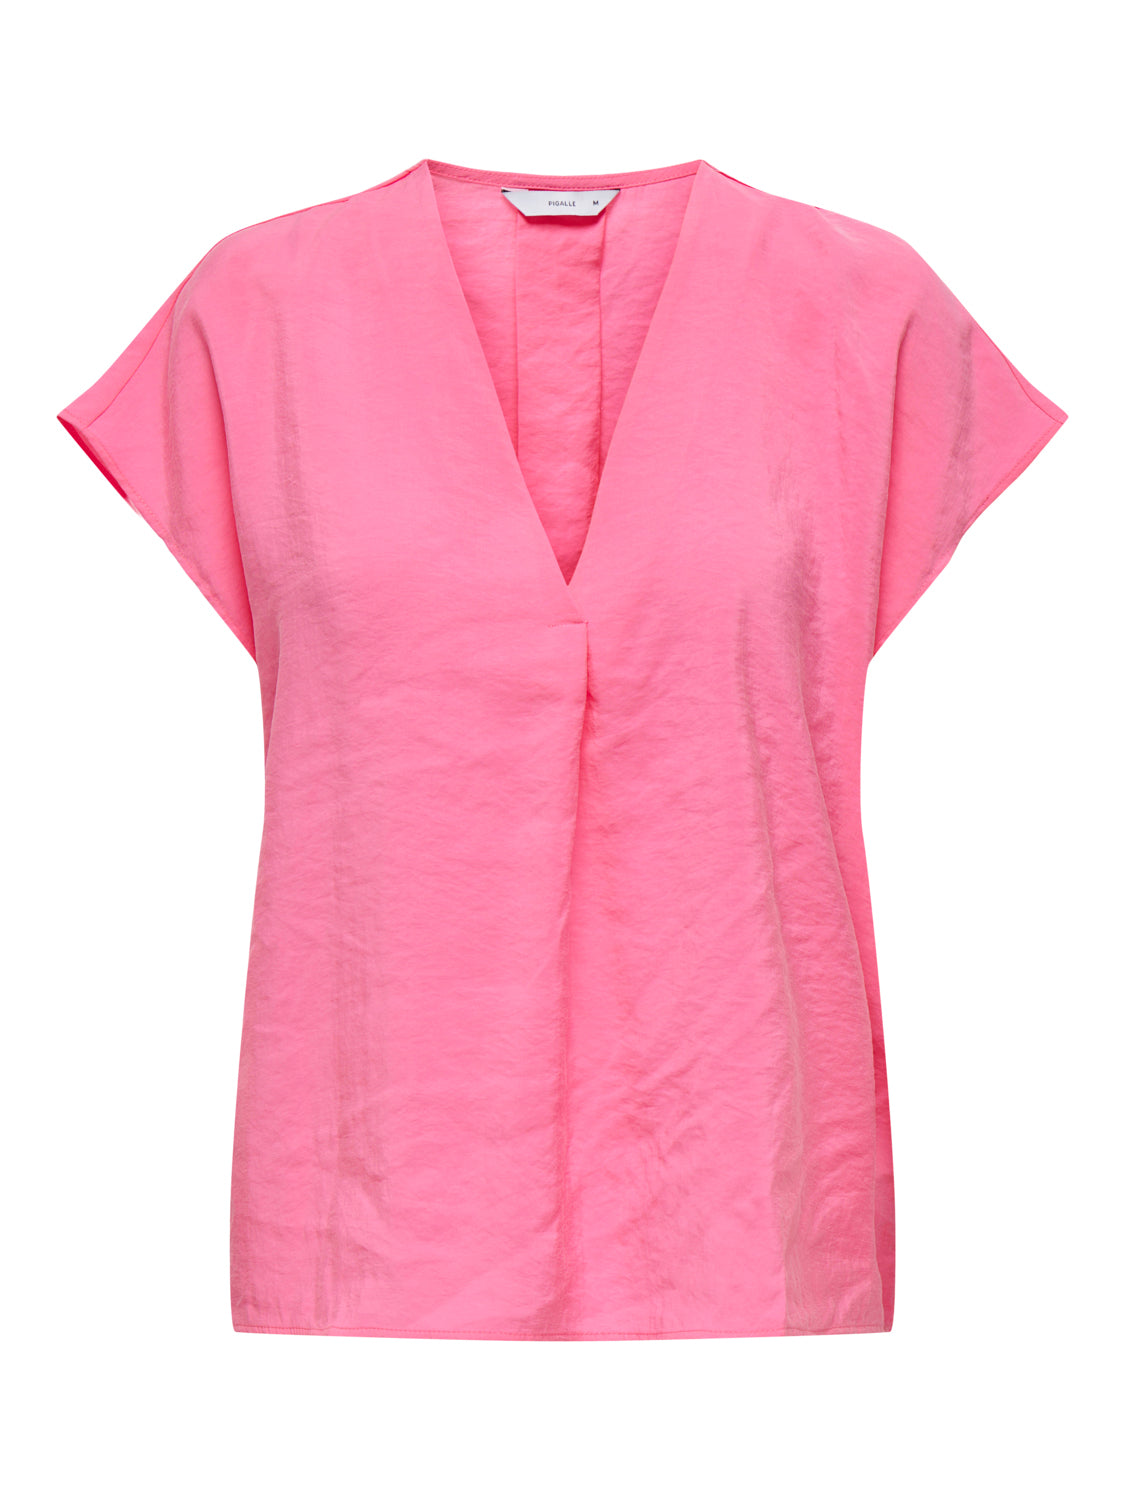 PGZAZIMA T-Shirts & Tops - Pink Carnation